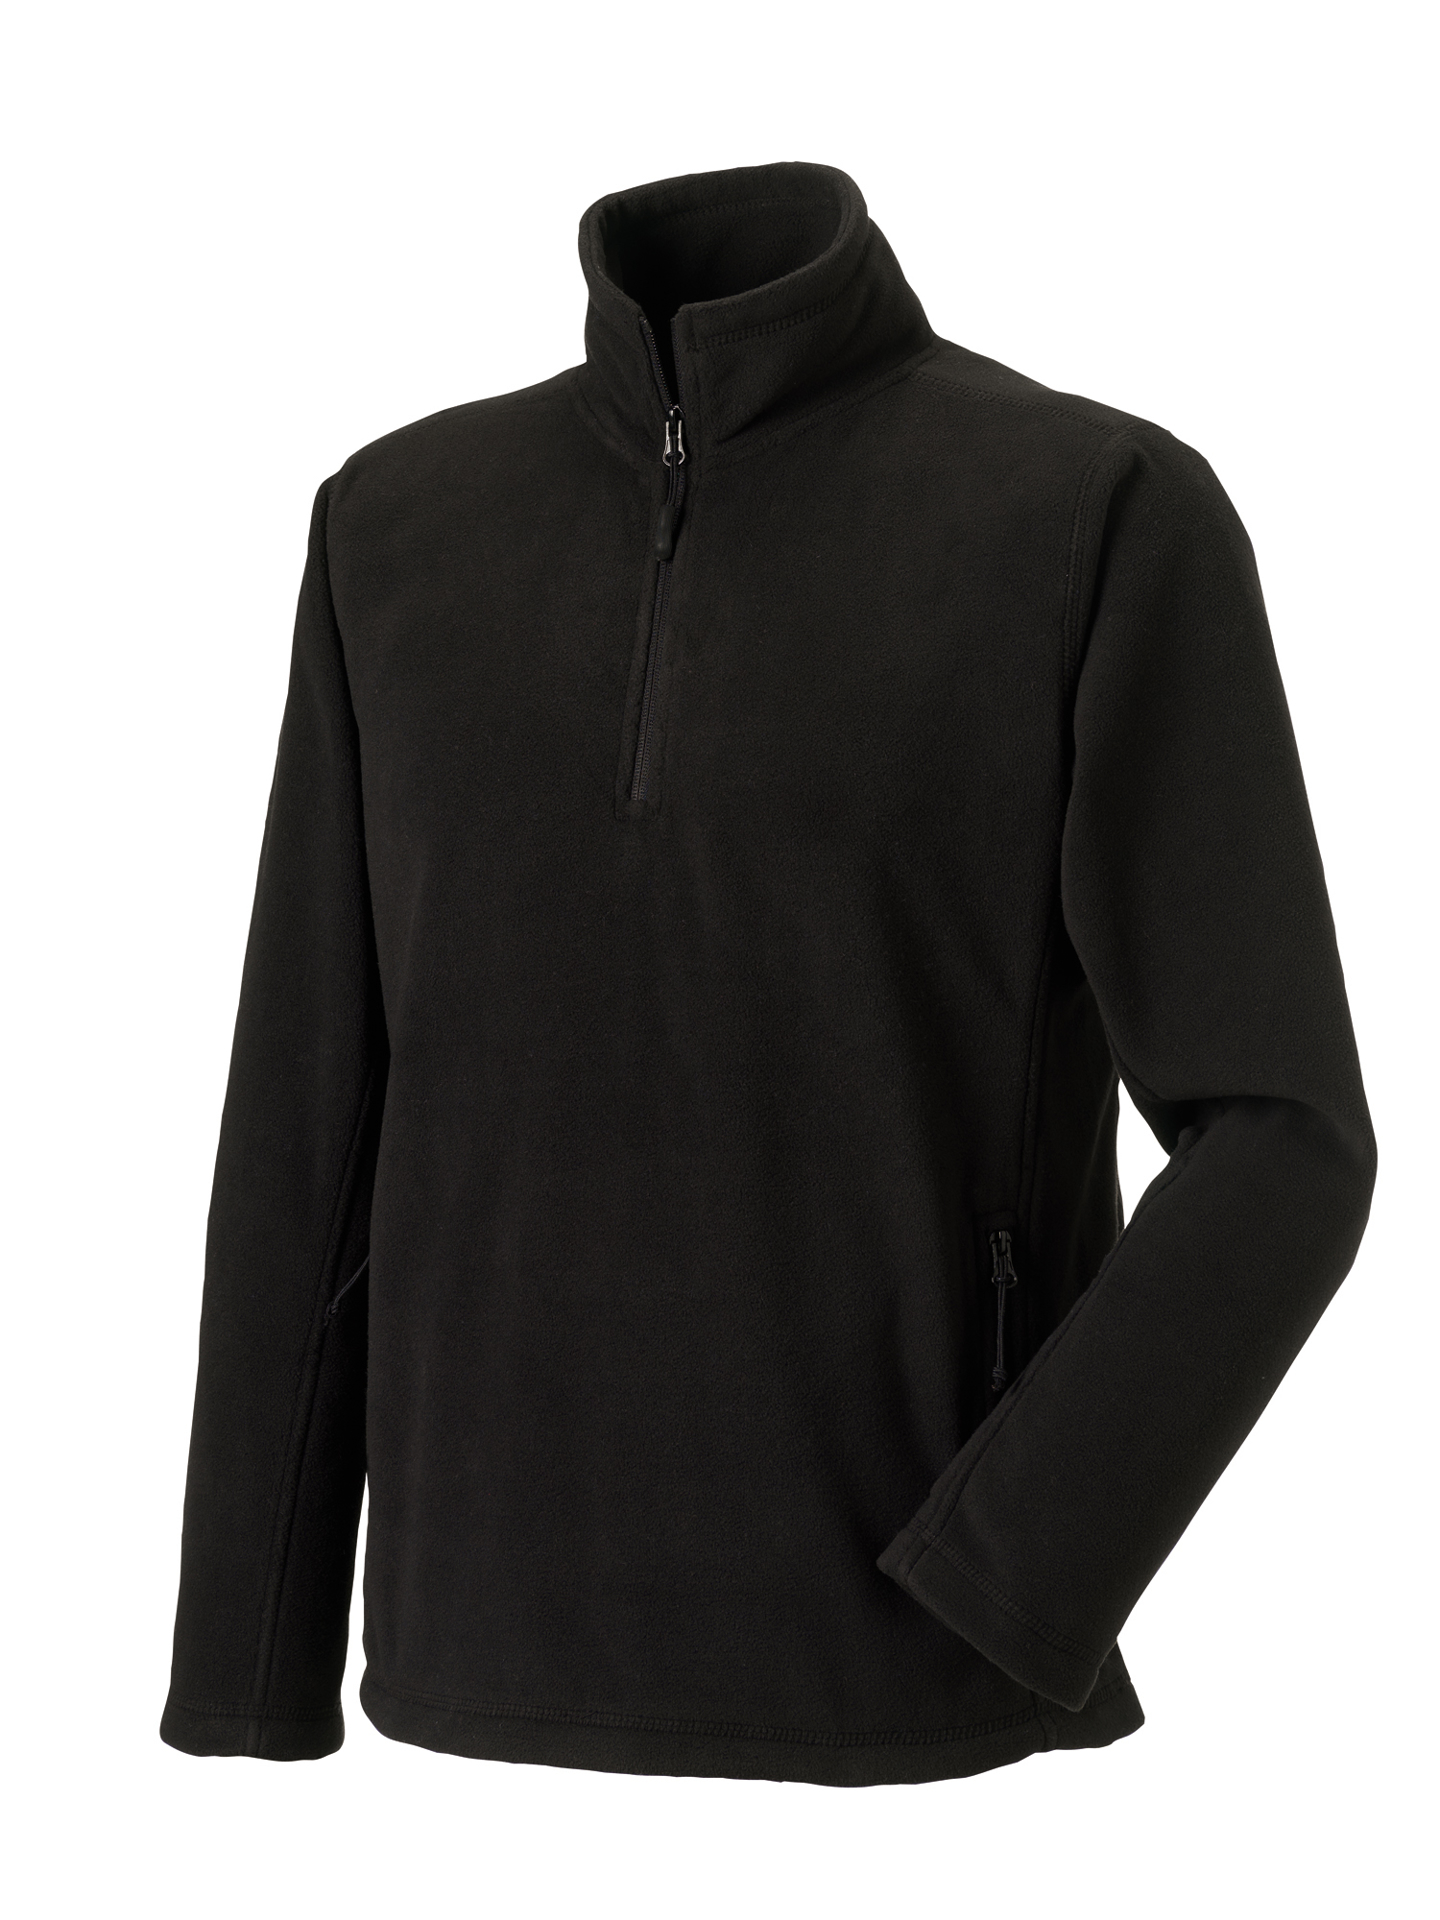 1/4 zip outdoor fleece in black with cadet collar and pockets